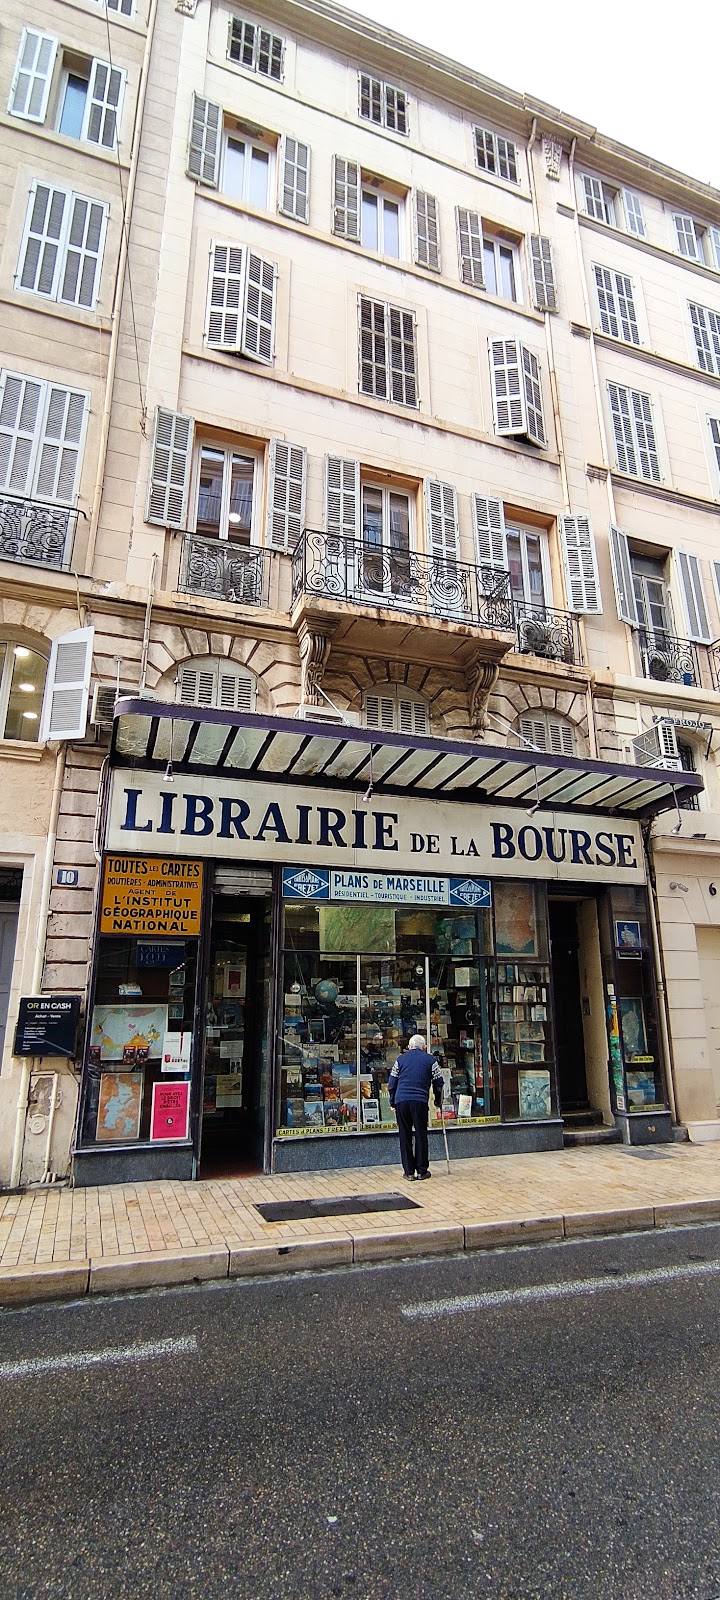 Librairie de la Bourse Frézet